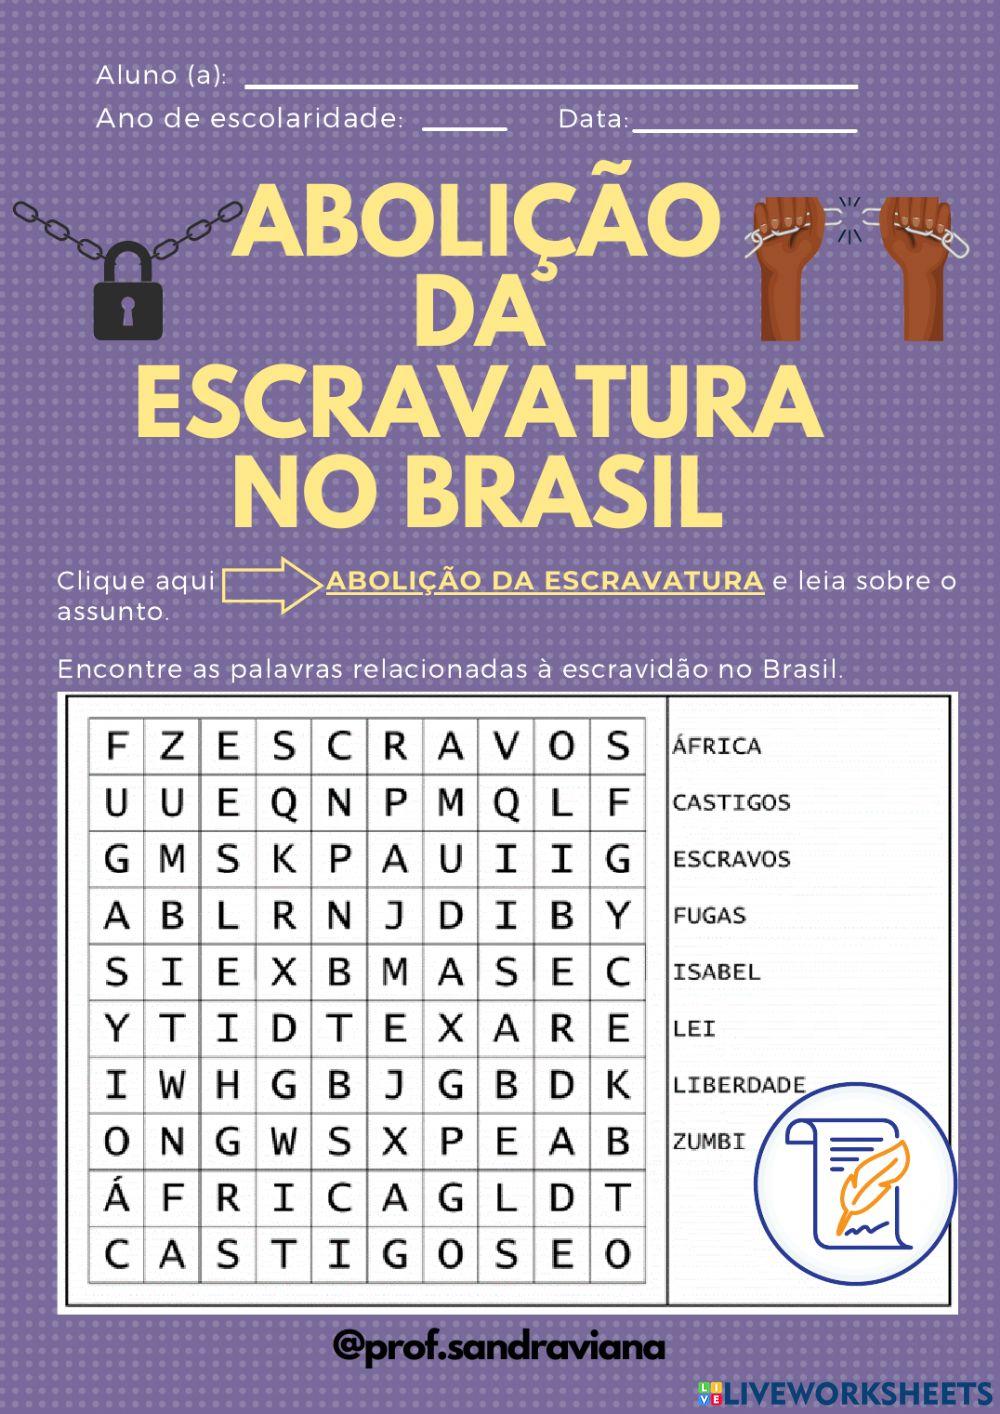 Abolição da escravatura no Brasil